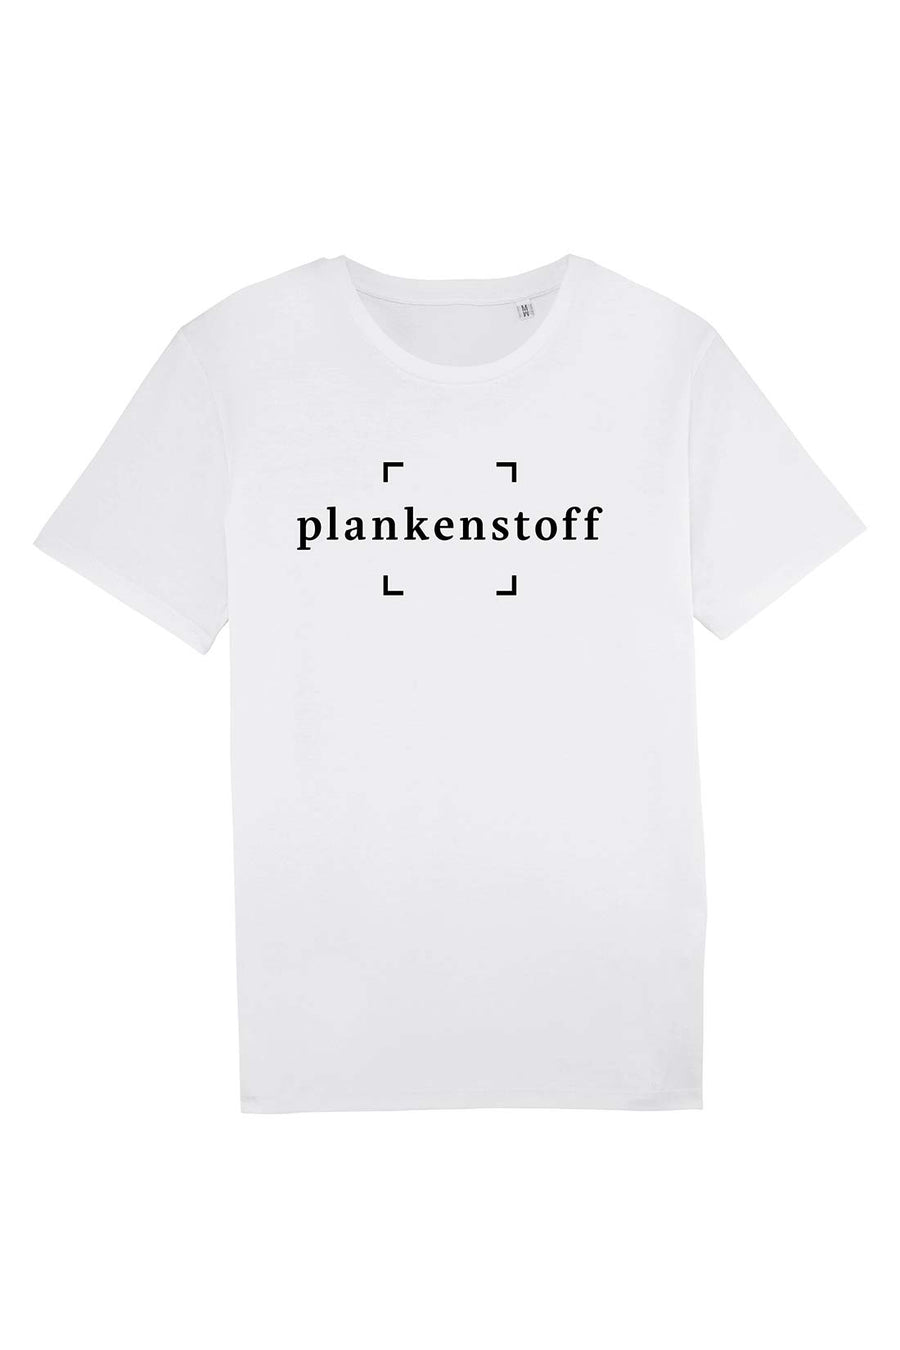 plankenstoff | T-Shirt weiß Unisex \